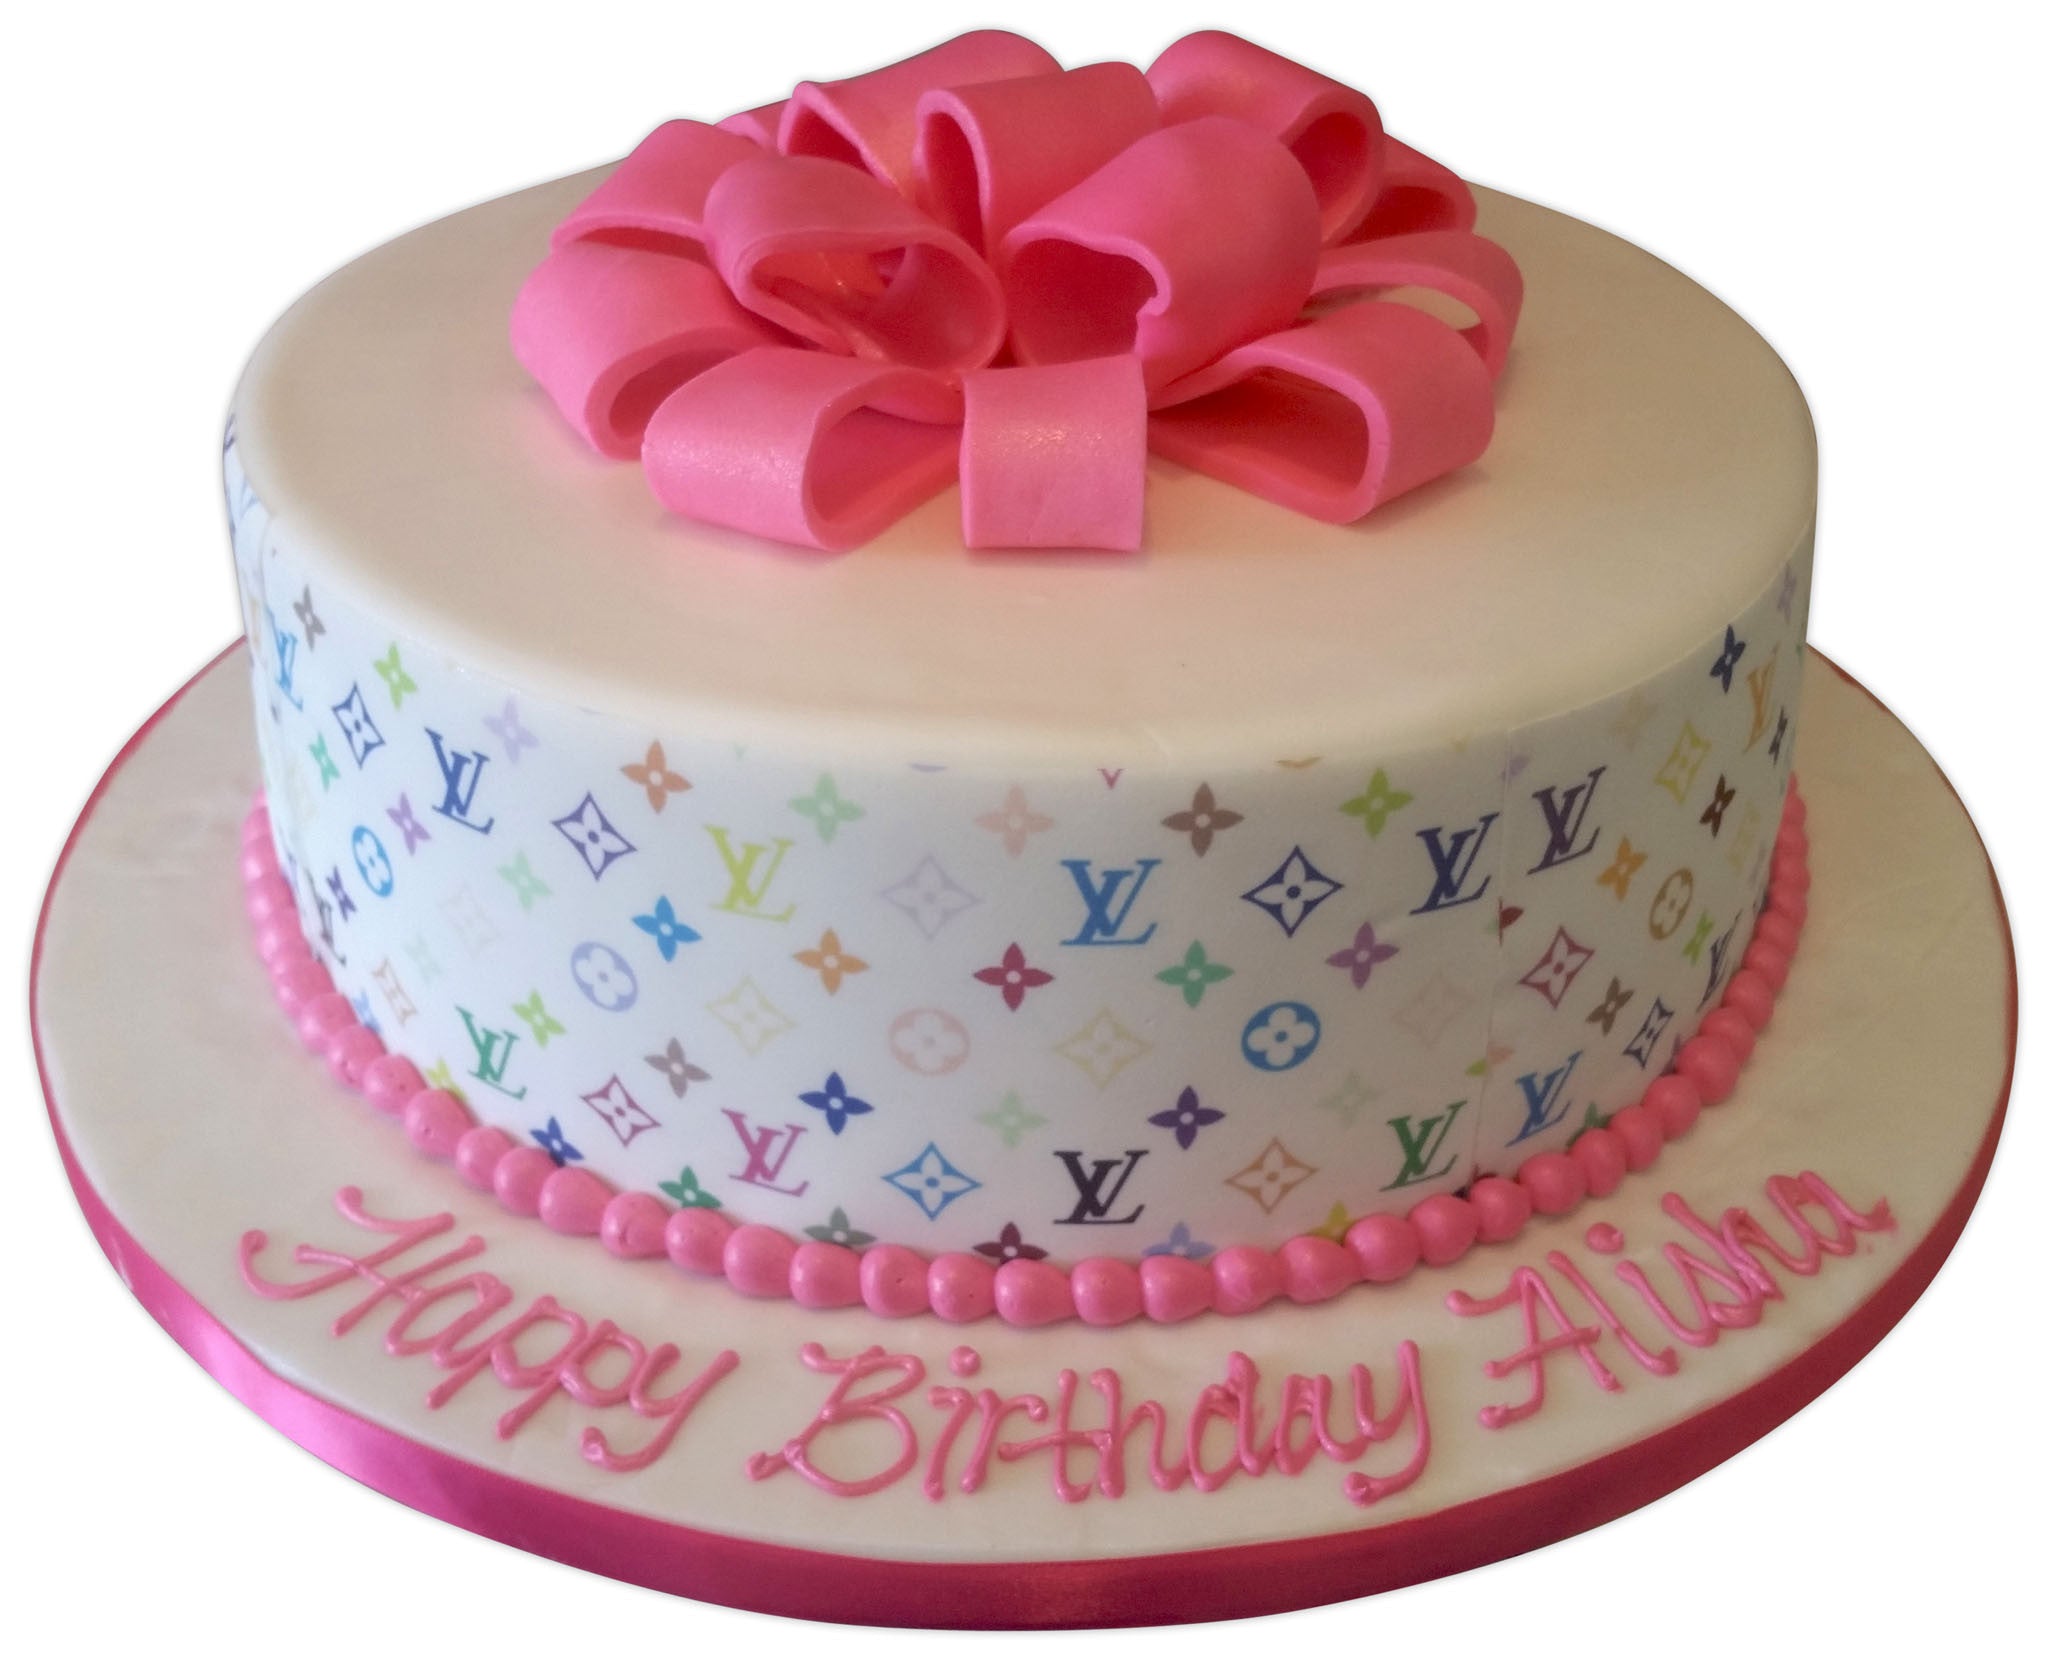 Alisha Happy Birthday Cakes Pics Gallery